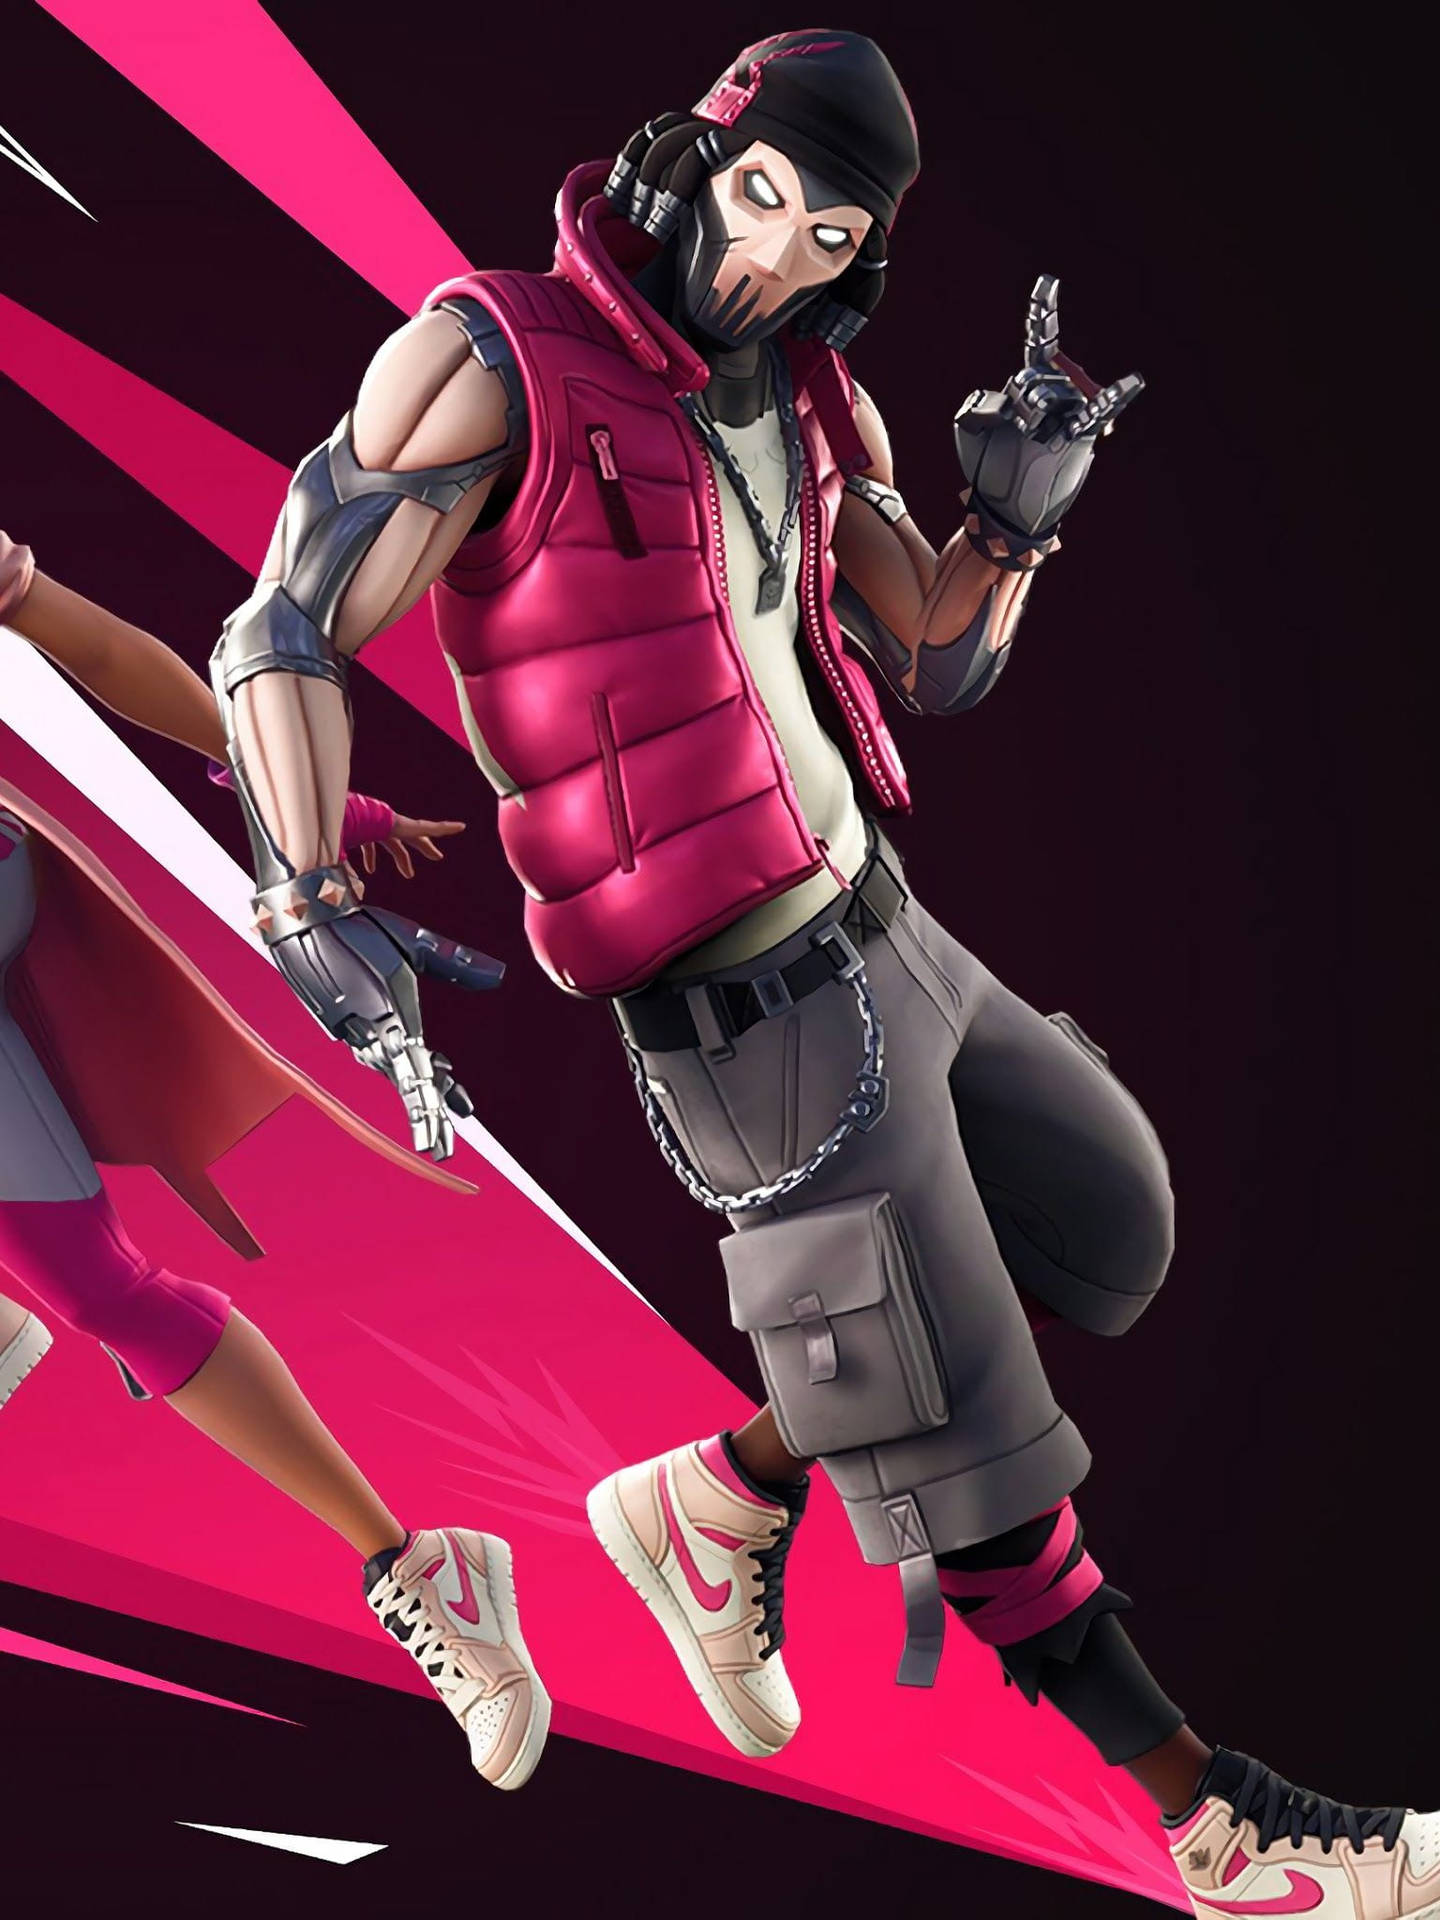 Fortniteprofilbild Pink Grind Epic Outfit. Wallpaper